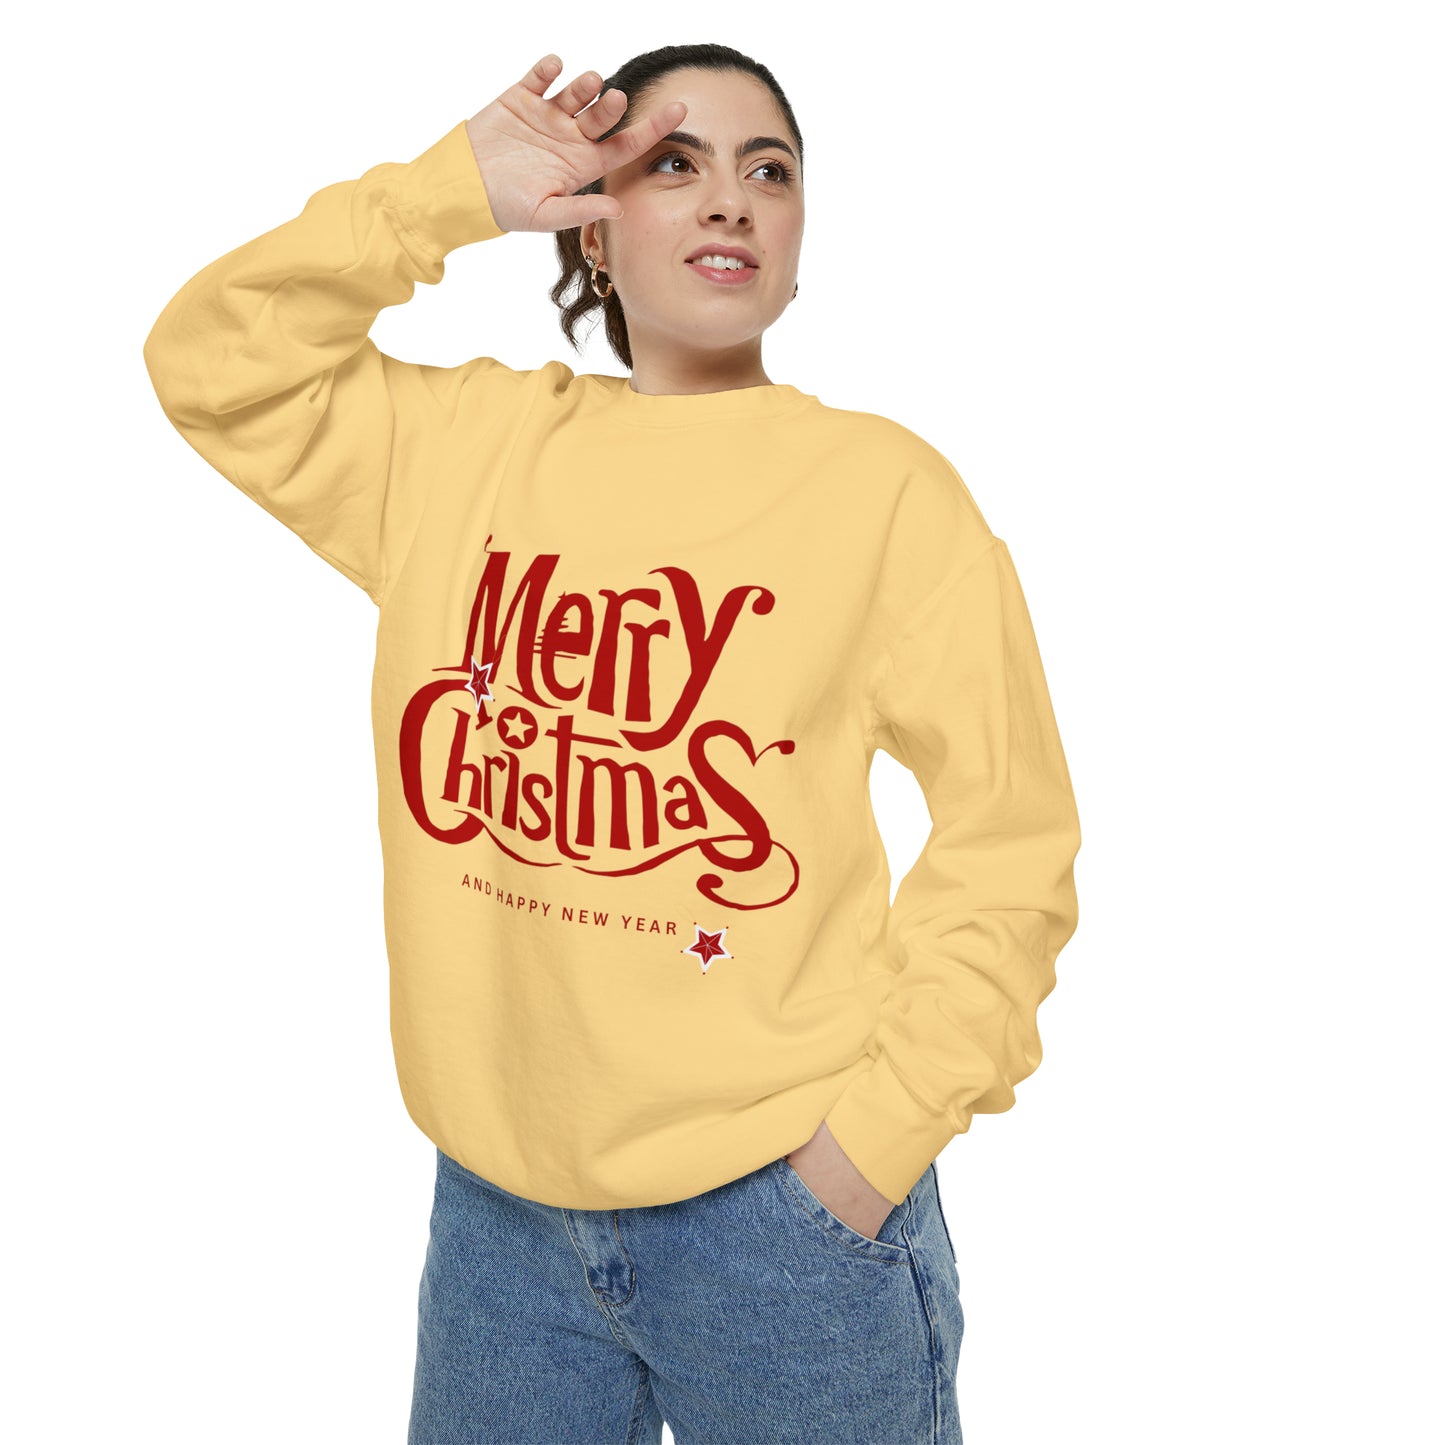 MERRY CHRISTMAS SWEATSHIRT Unisex Garment-Dyed Sweatshirt